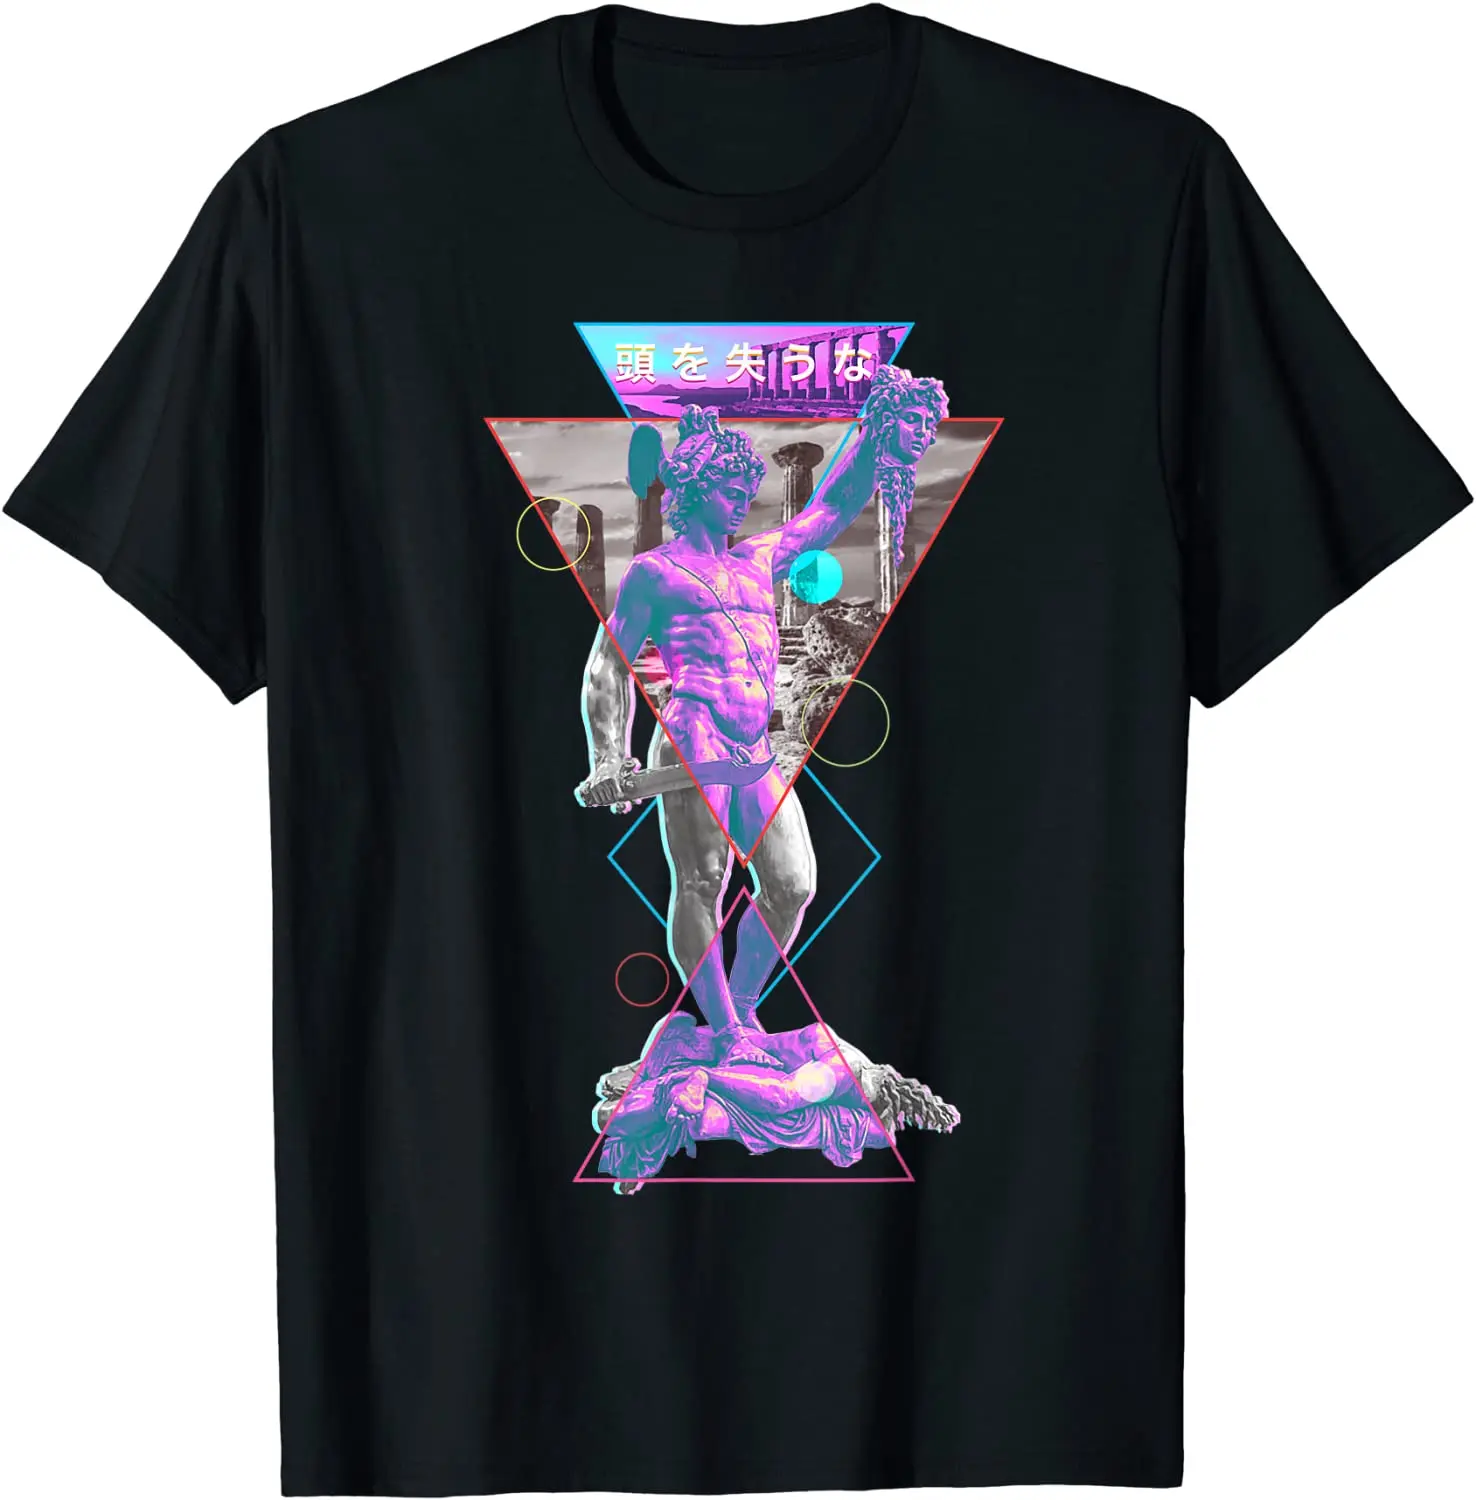 

2021 T Shirt Women Kawaii Summer Tops T-shirt Tee Shirt Unisex Perseus and Medusa Vaporwave Aesthetic 1980s Art Japanese T-Shirt